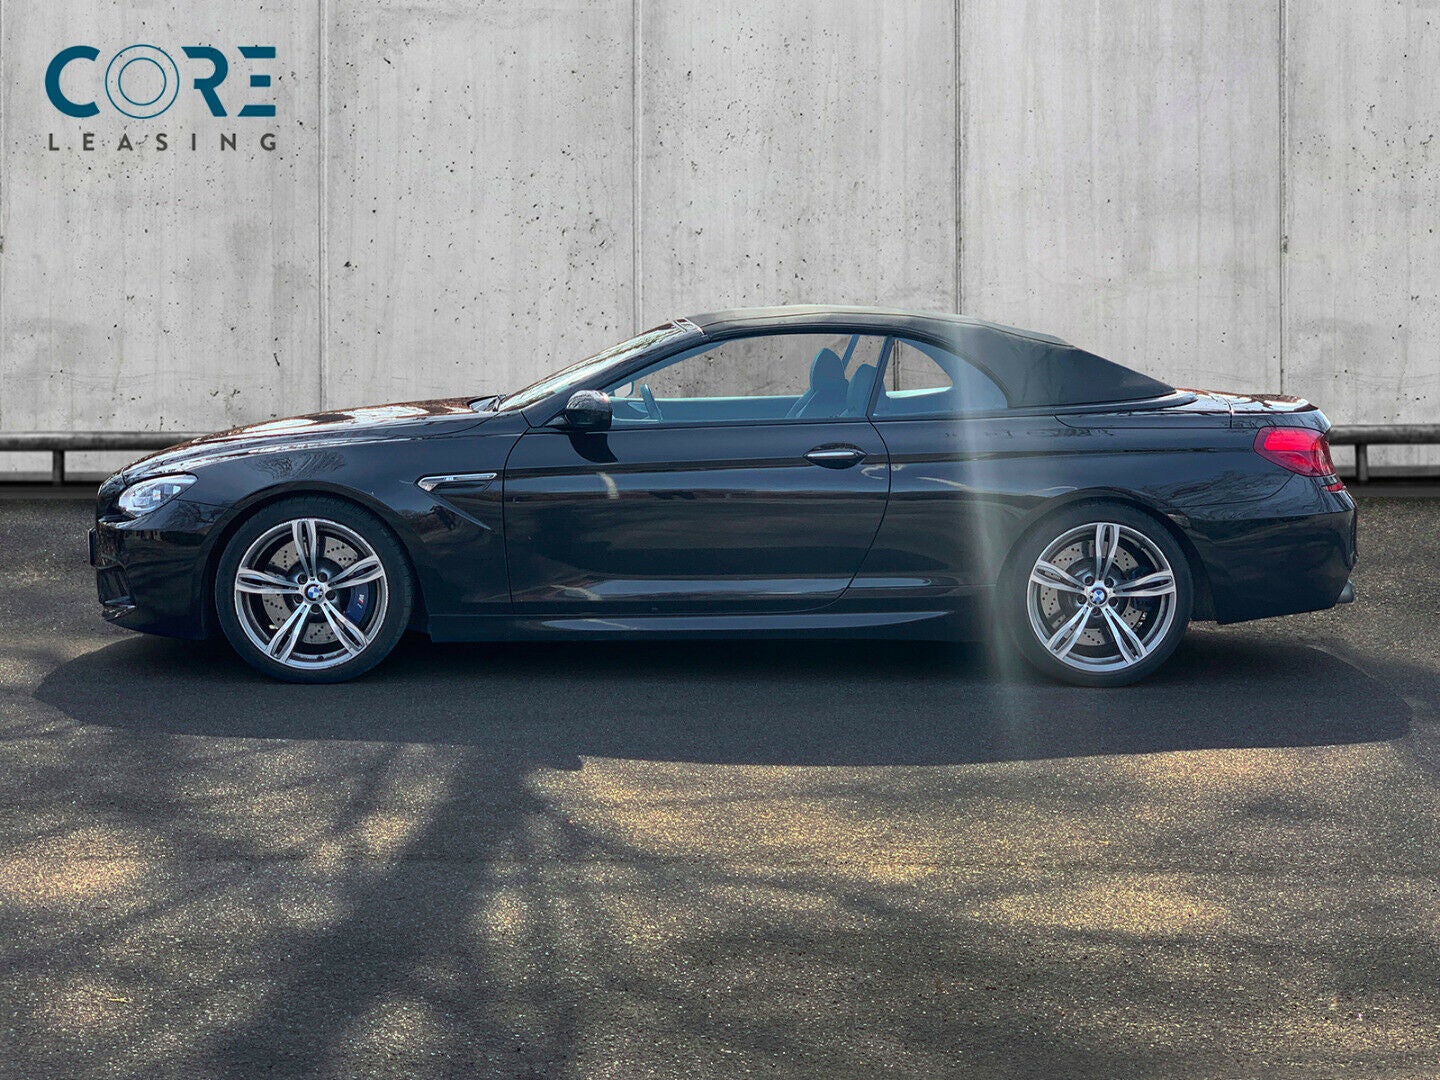 Sortmetal BMW M6 Cabriolet aut. fra 2013 parkeret foran en betonmur. CORE Leasing A/S er eksperter i BMW leasing.